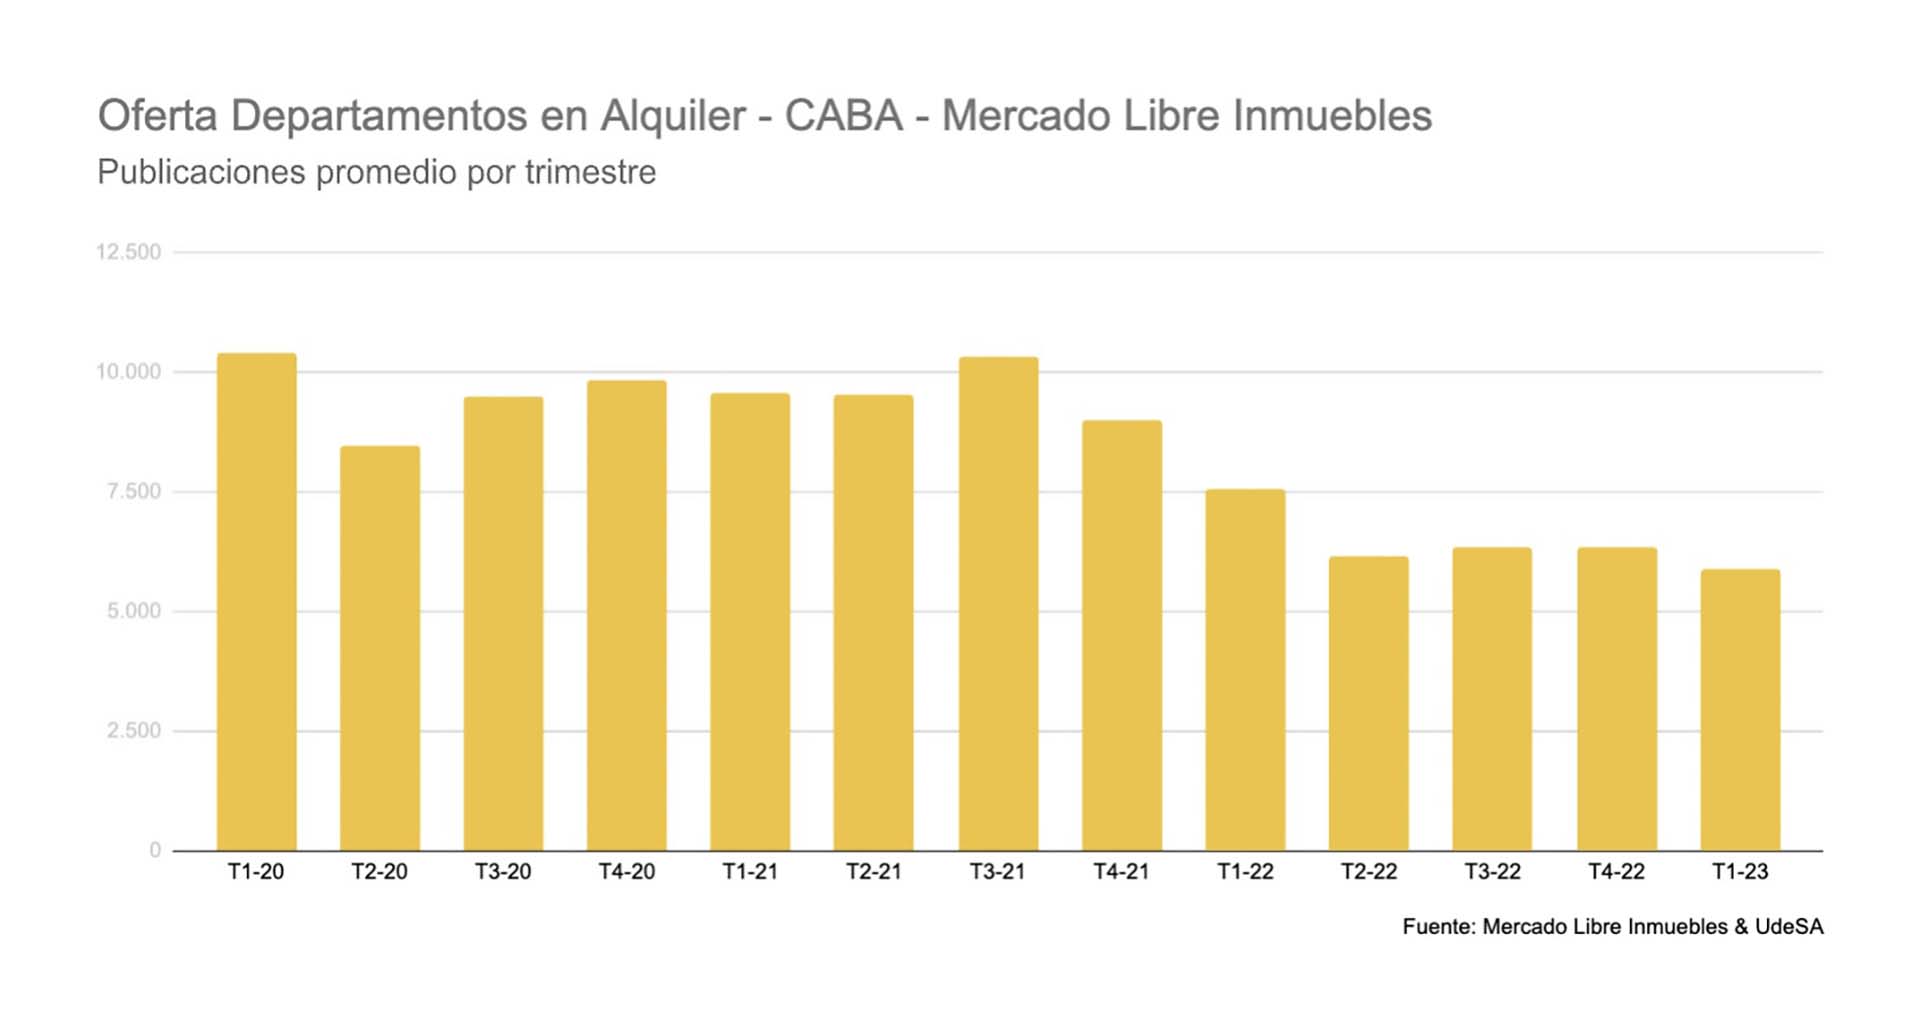 Fuente: Mercado Libre, Universidad de San Andrés en conjunto con la Cámara Inmobiliaria Argentina. Aquí se observa cómo fue disminuyendo la oferta de viviendas en el AMBA desde 2020 a la fecha